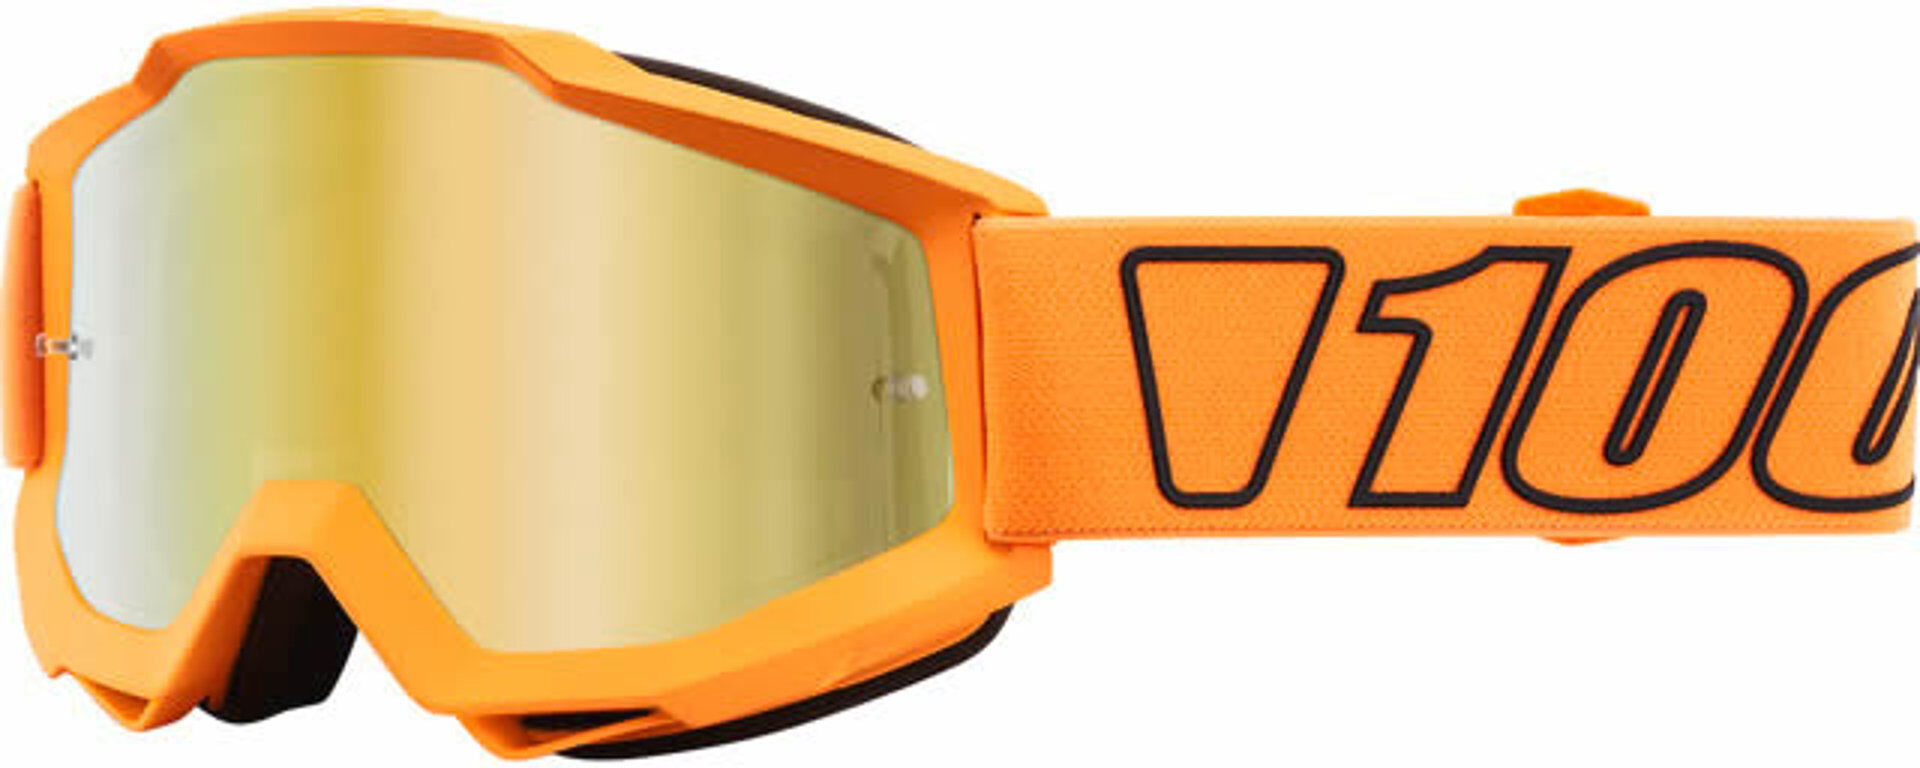 100% Accuri Extra Luminari Gafas de motocross - Naranja (un tamaño)